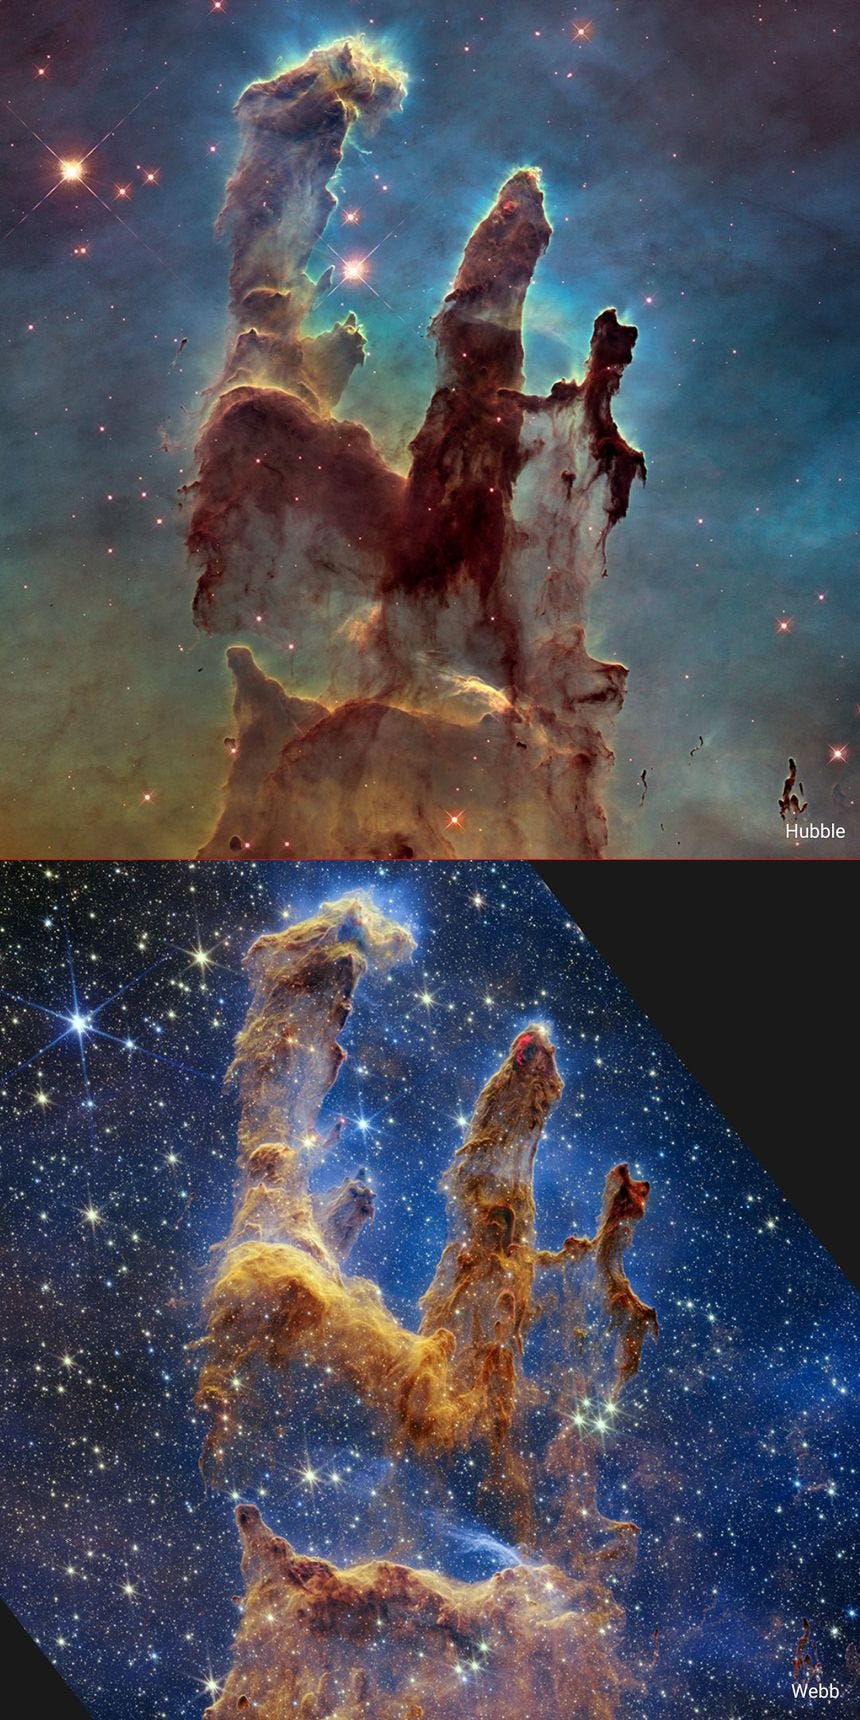 Le télescope Hubble a été saisi une première fois en 1995, puis revisité en 2014 (image du dessus). En 2022 c'est au tour de Webb de saisir le cliché